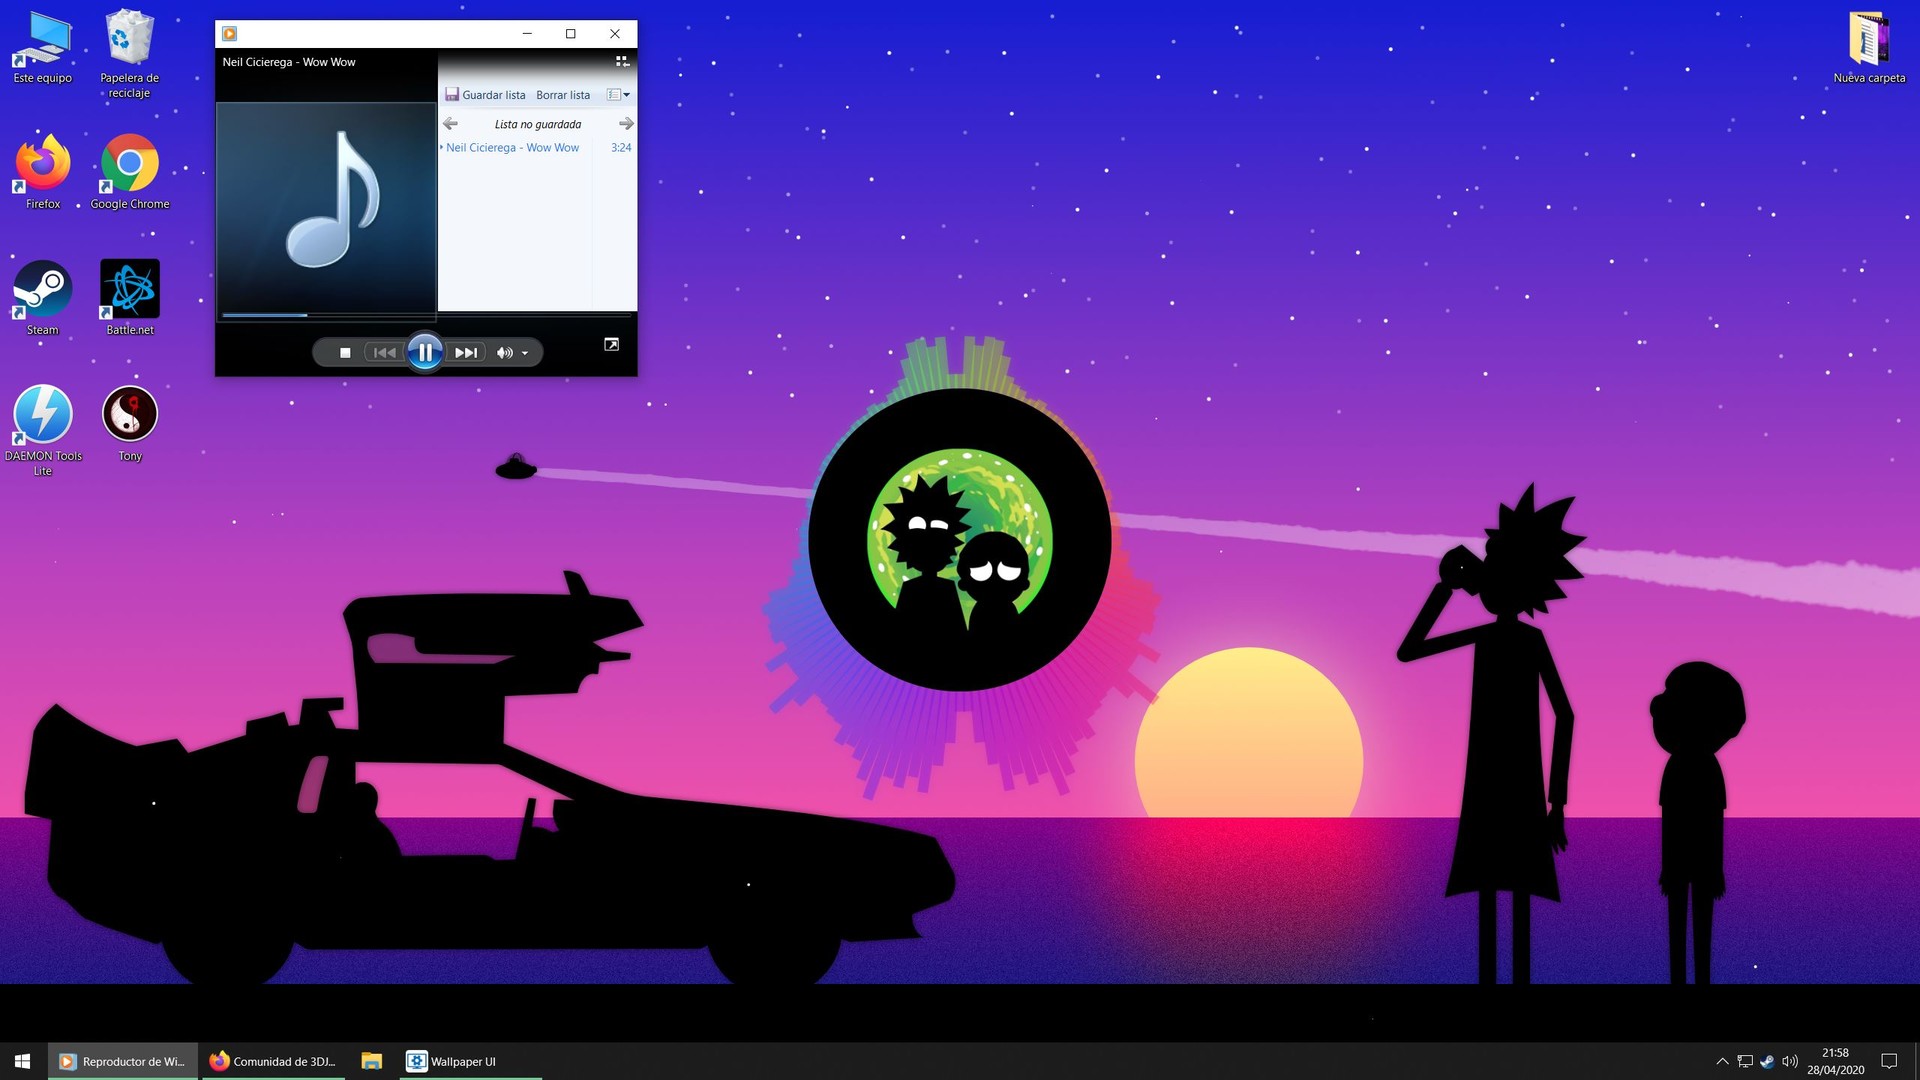 Fondos de pantalla animados en Windows 10 - Gamers PC